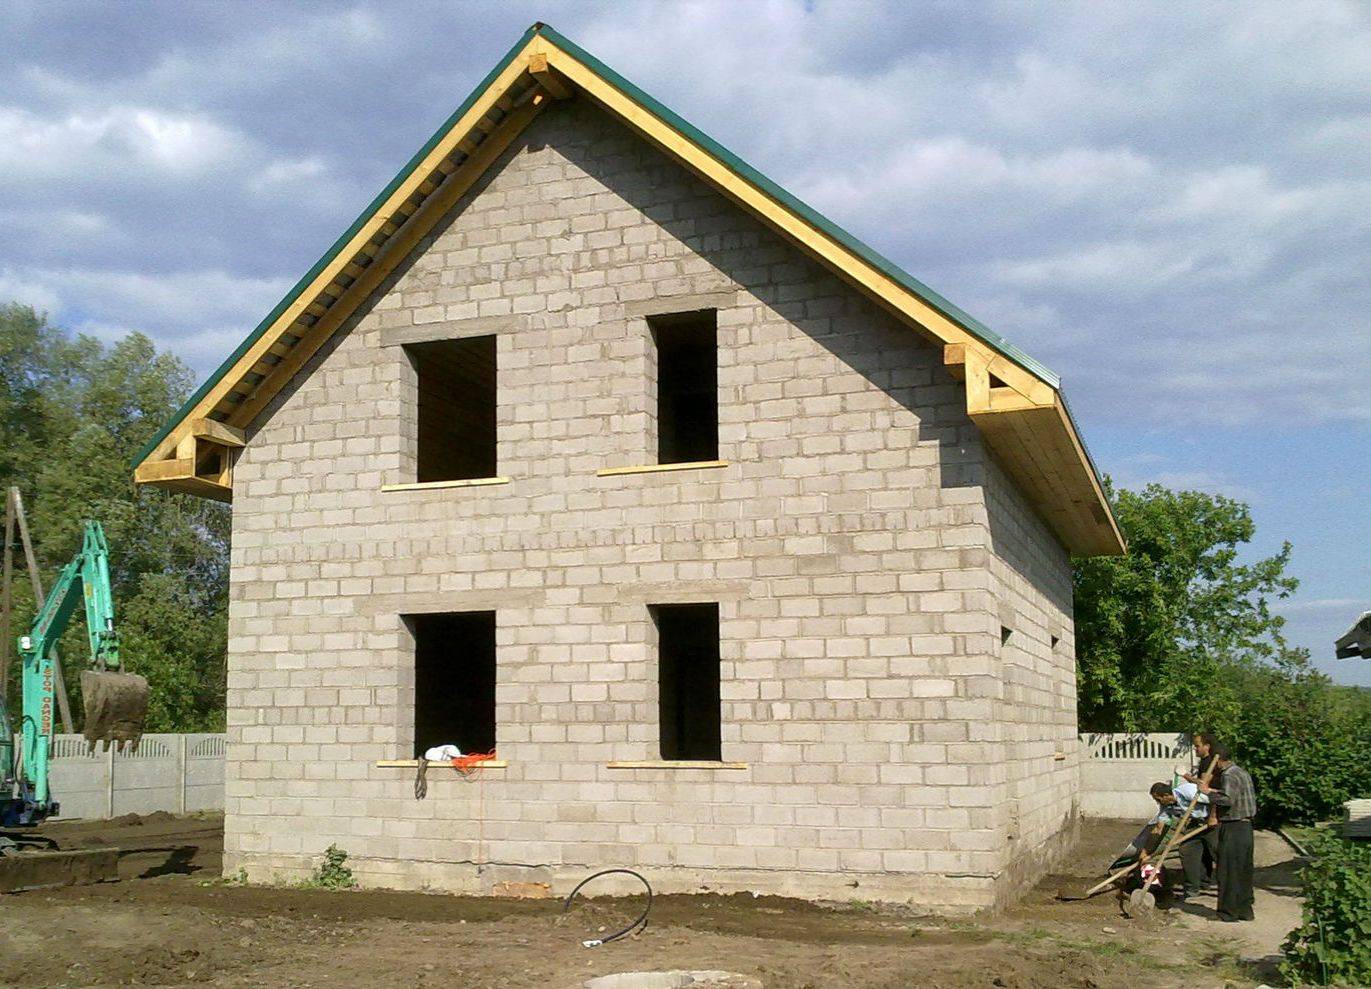 Бюджетное строительство дома из шлакоблоков. как построить и утеплить дом из шлакоблока